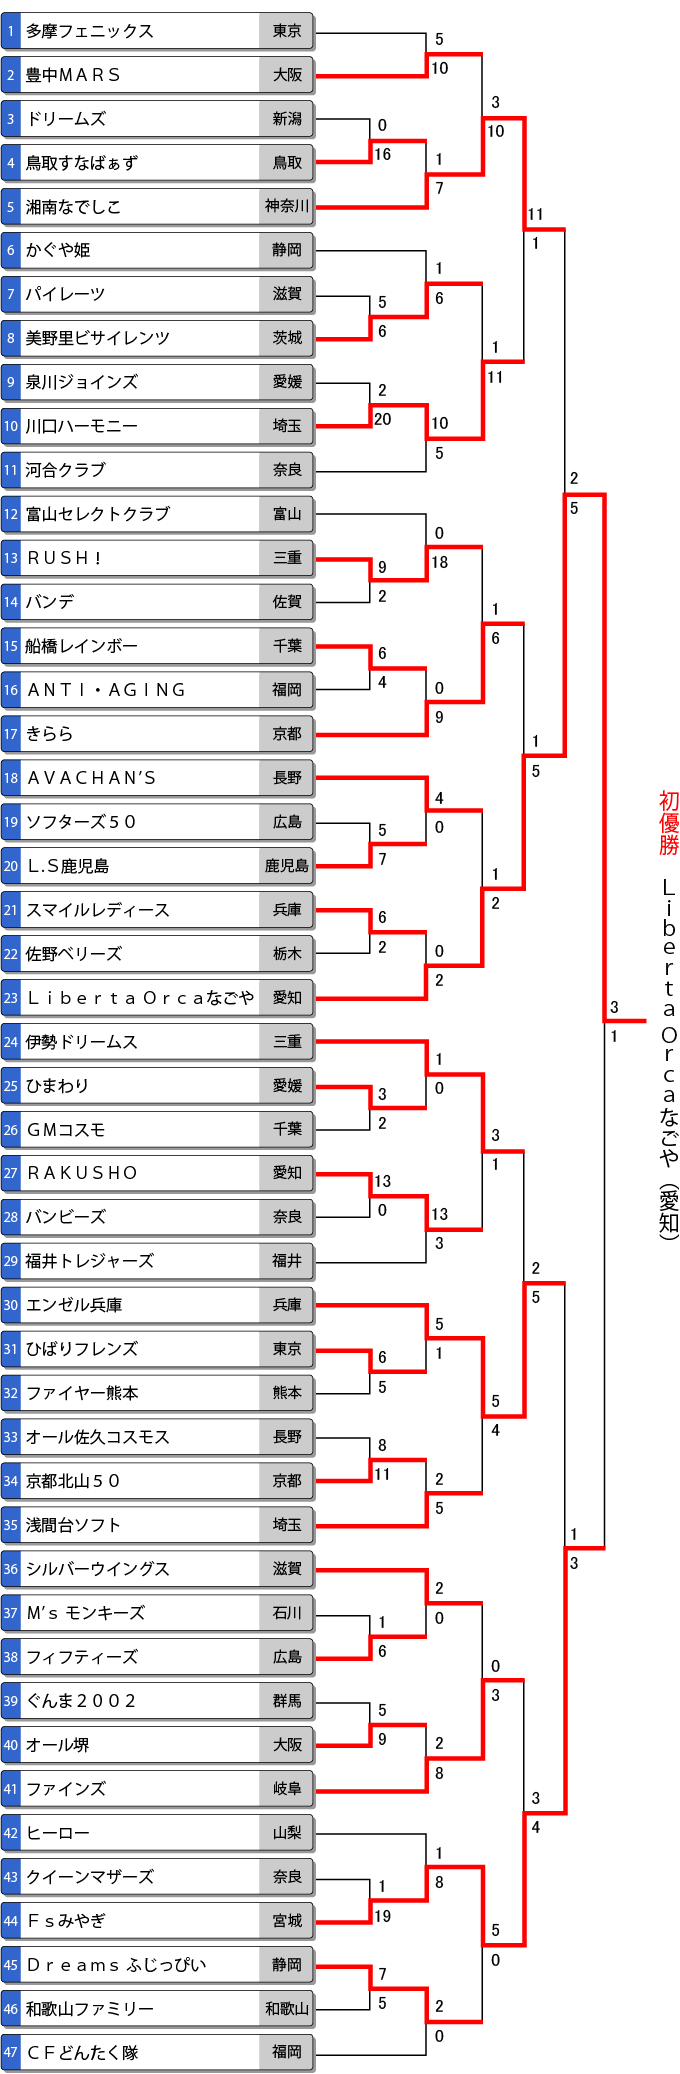 第17回全日本エルデスト大会トーナメント表